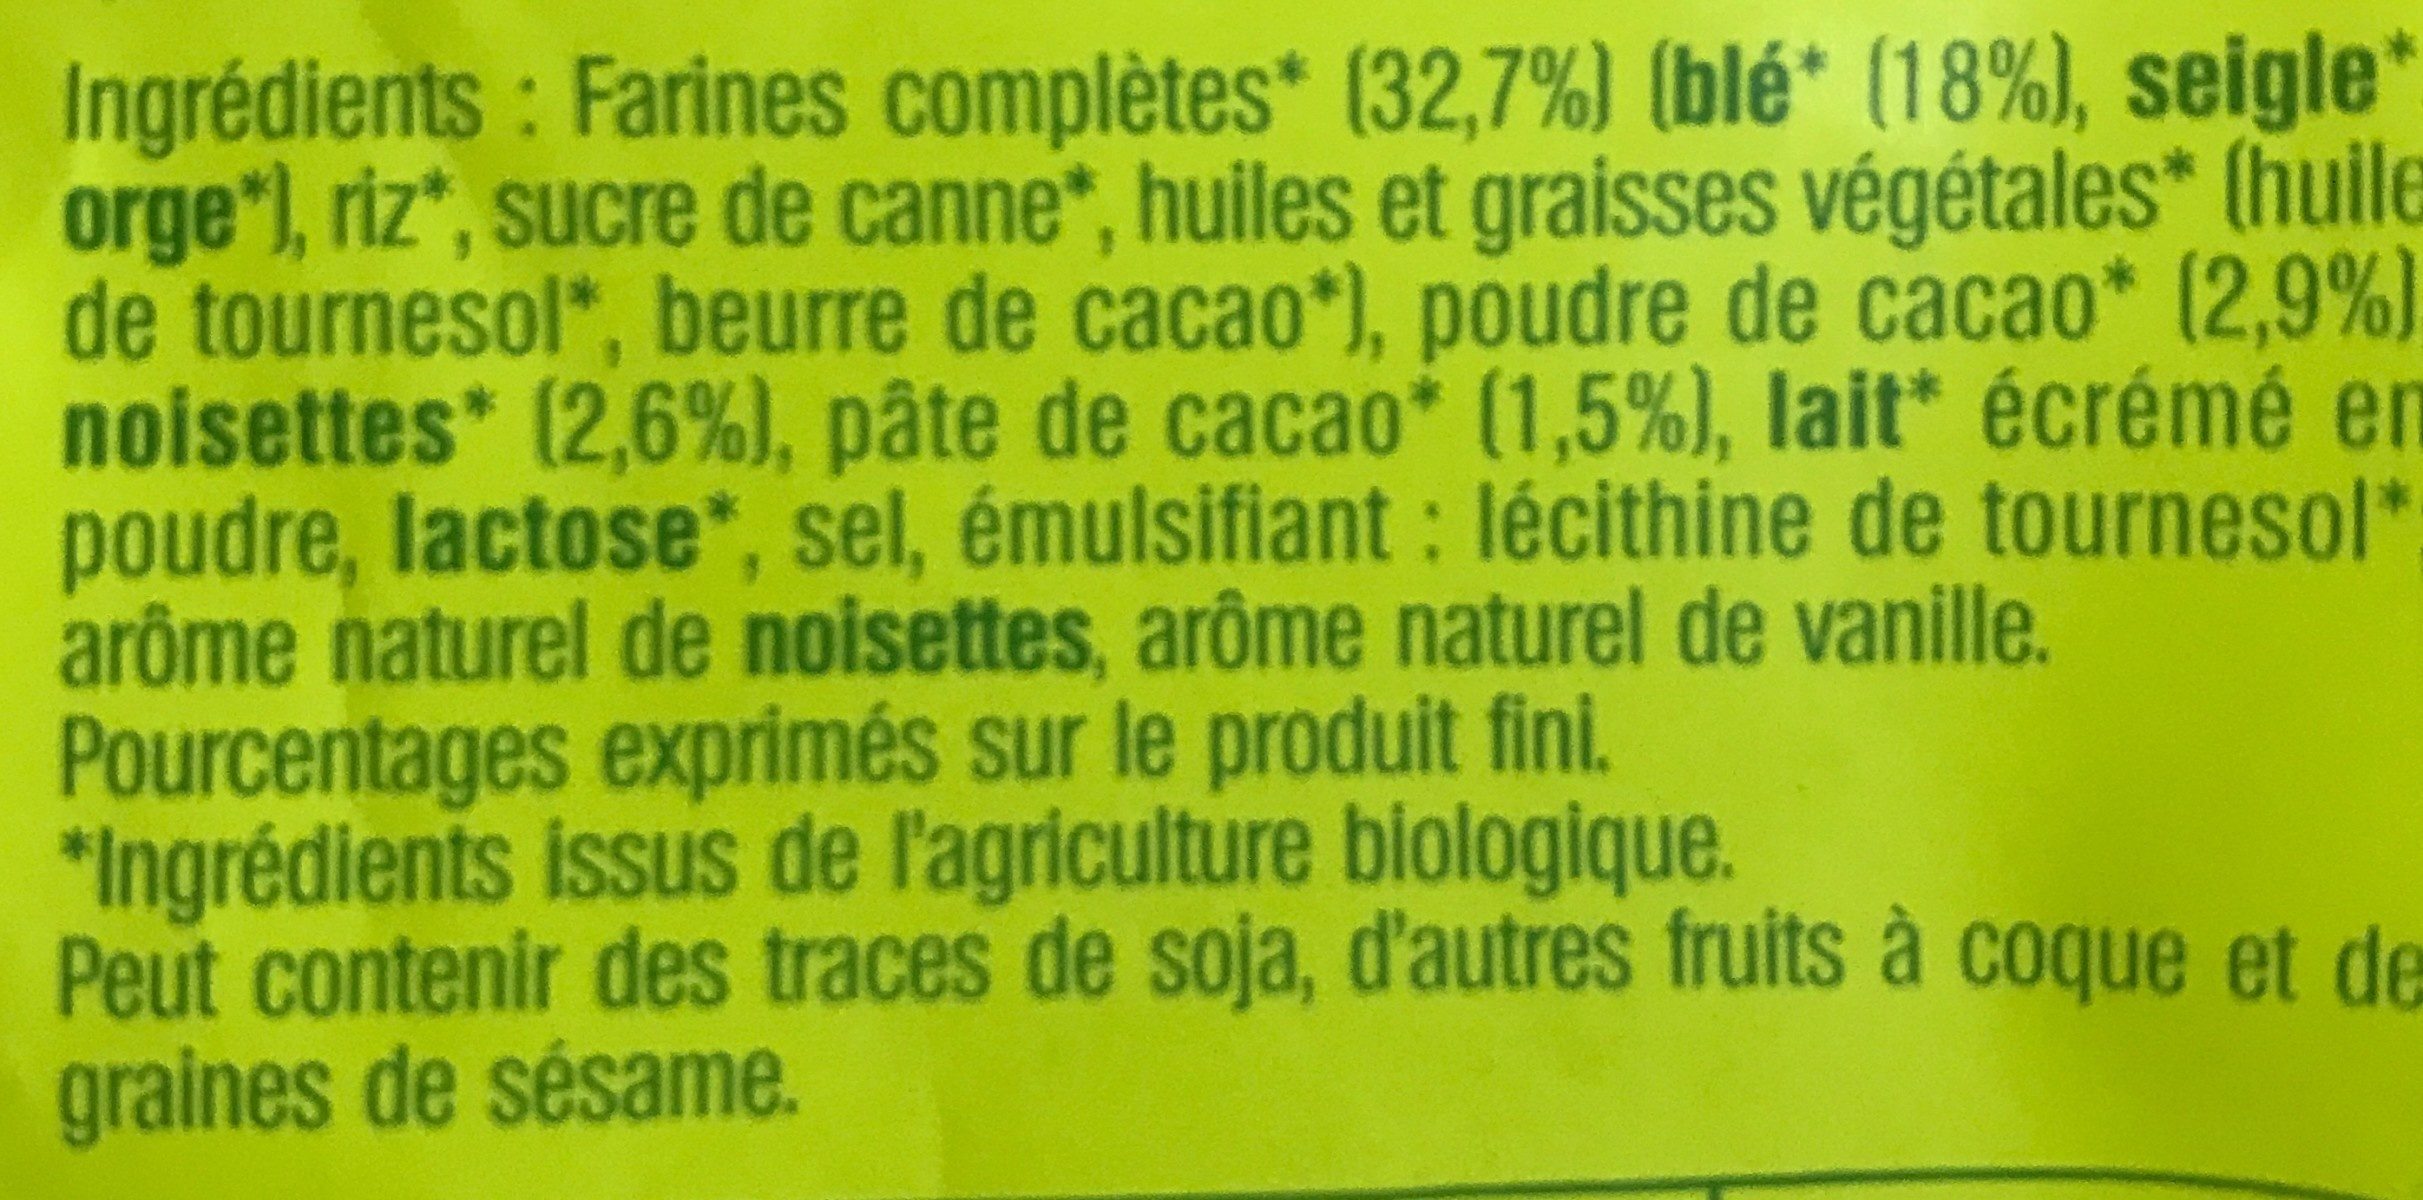 Fourrés cacao - Ingredients - fr